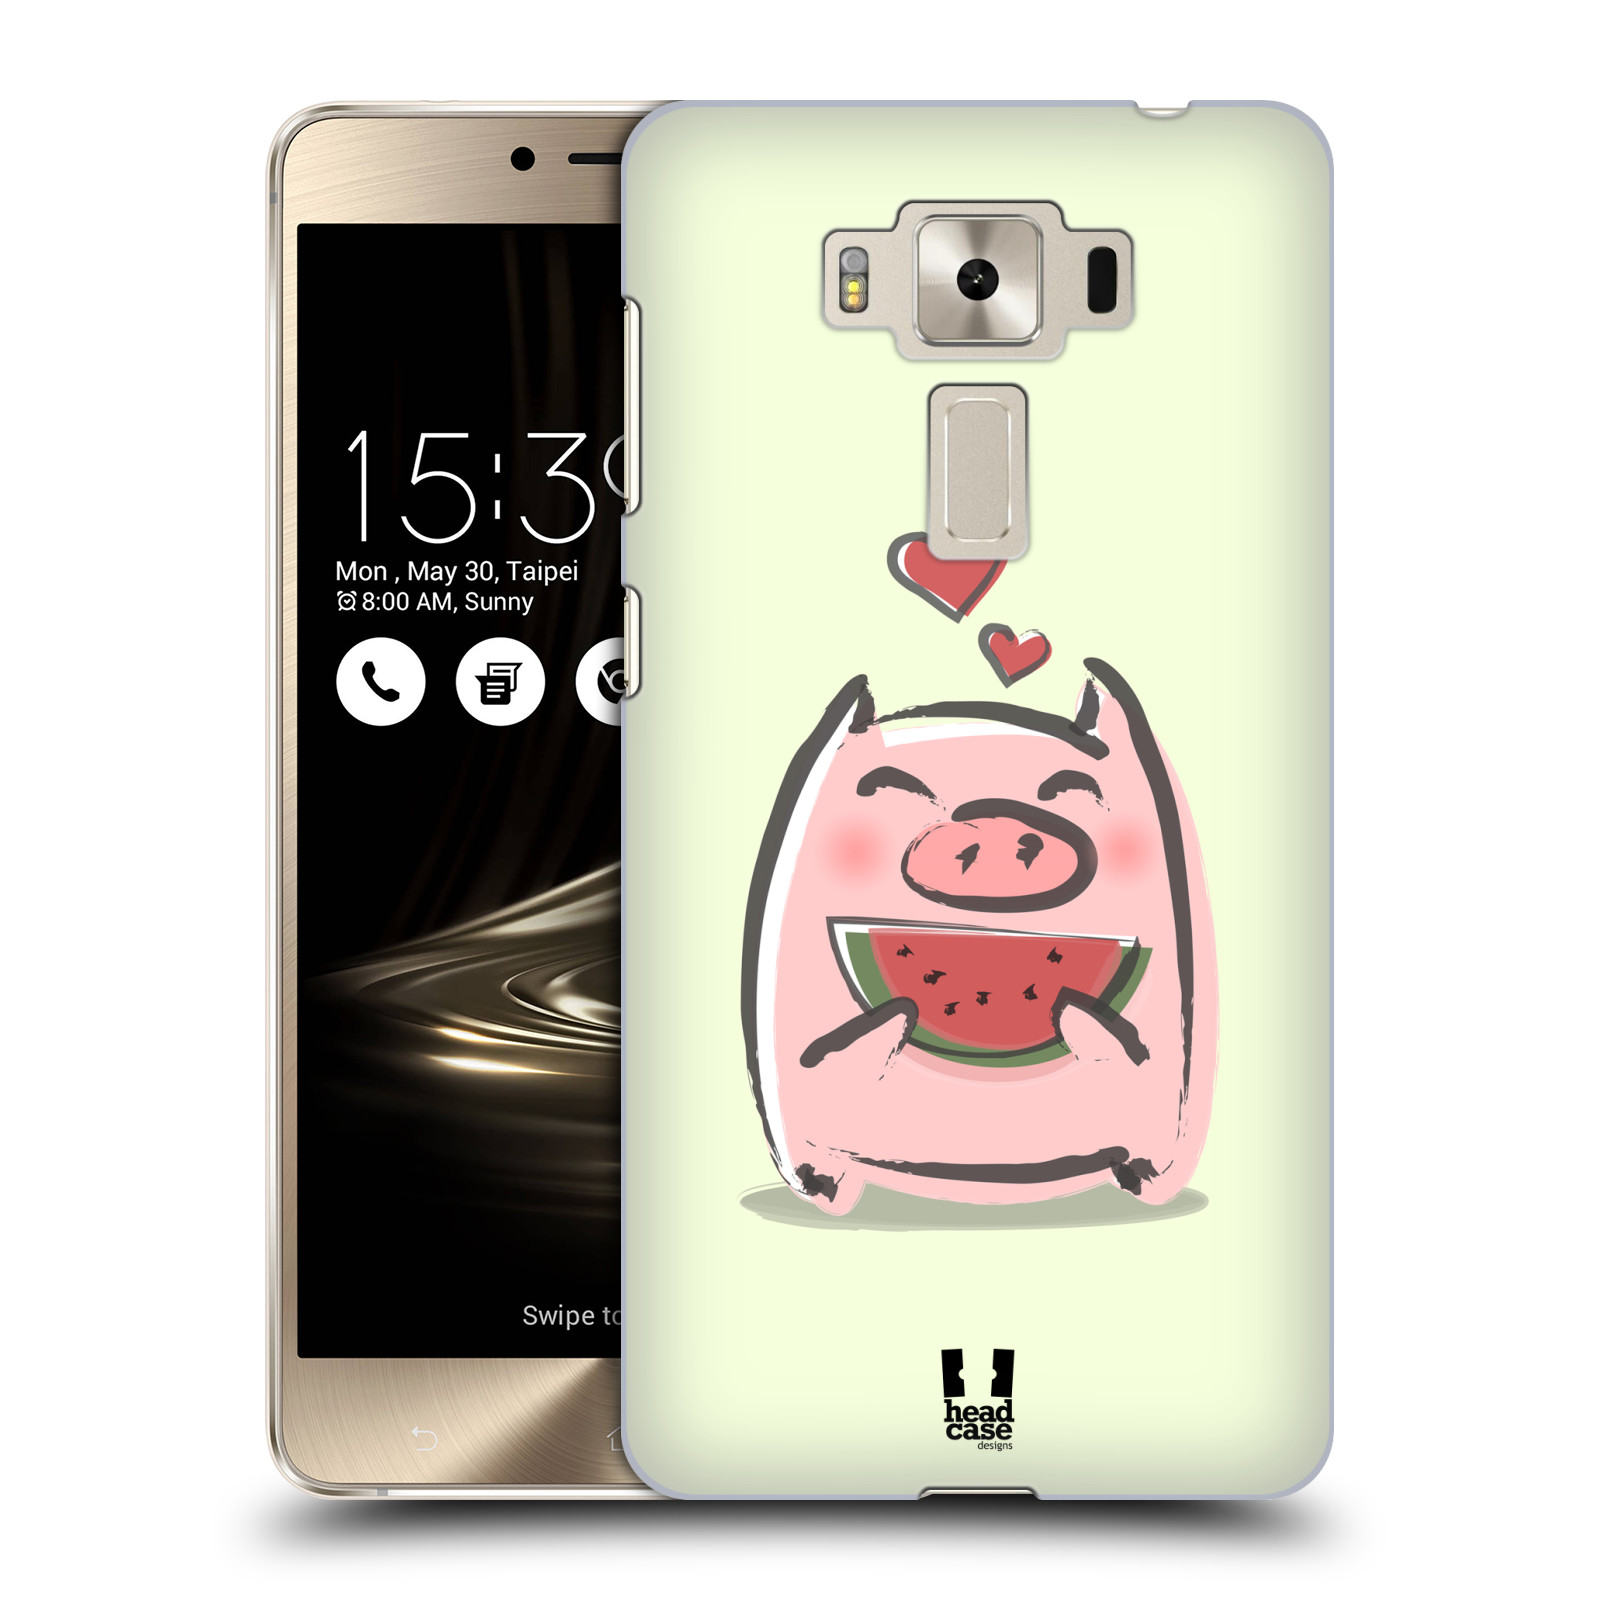 HEAD CASE plastový obal na mobil Asus Zenfone 3 DELUXE ZS550KL vzor roztomilé růžové prasátko vodní meloun